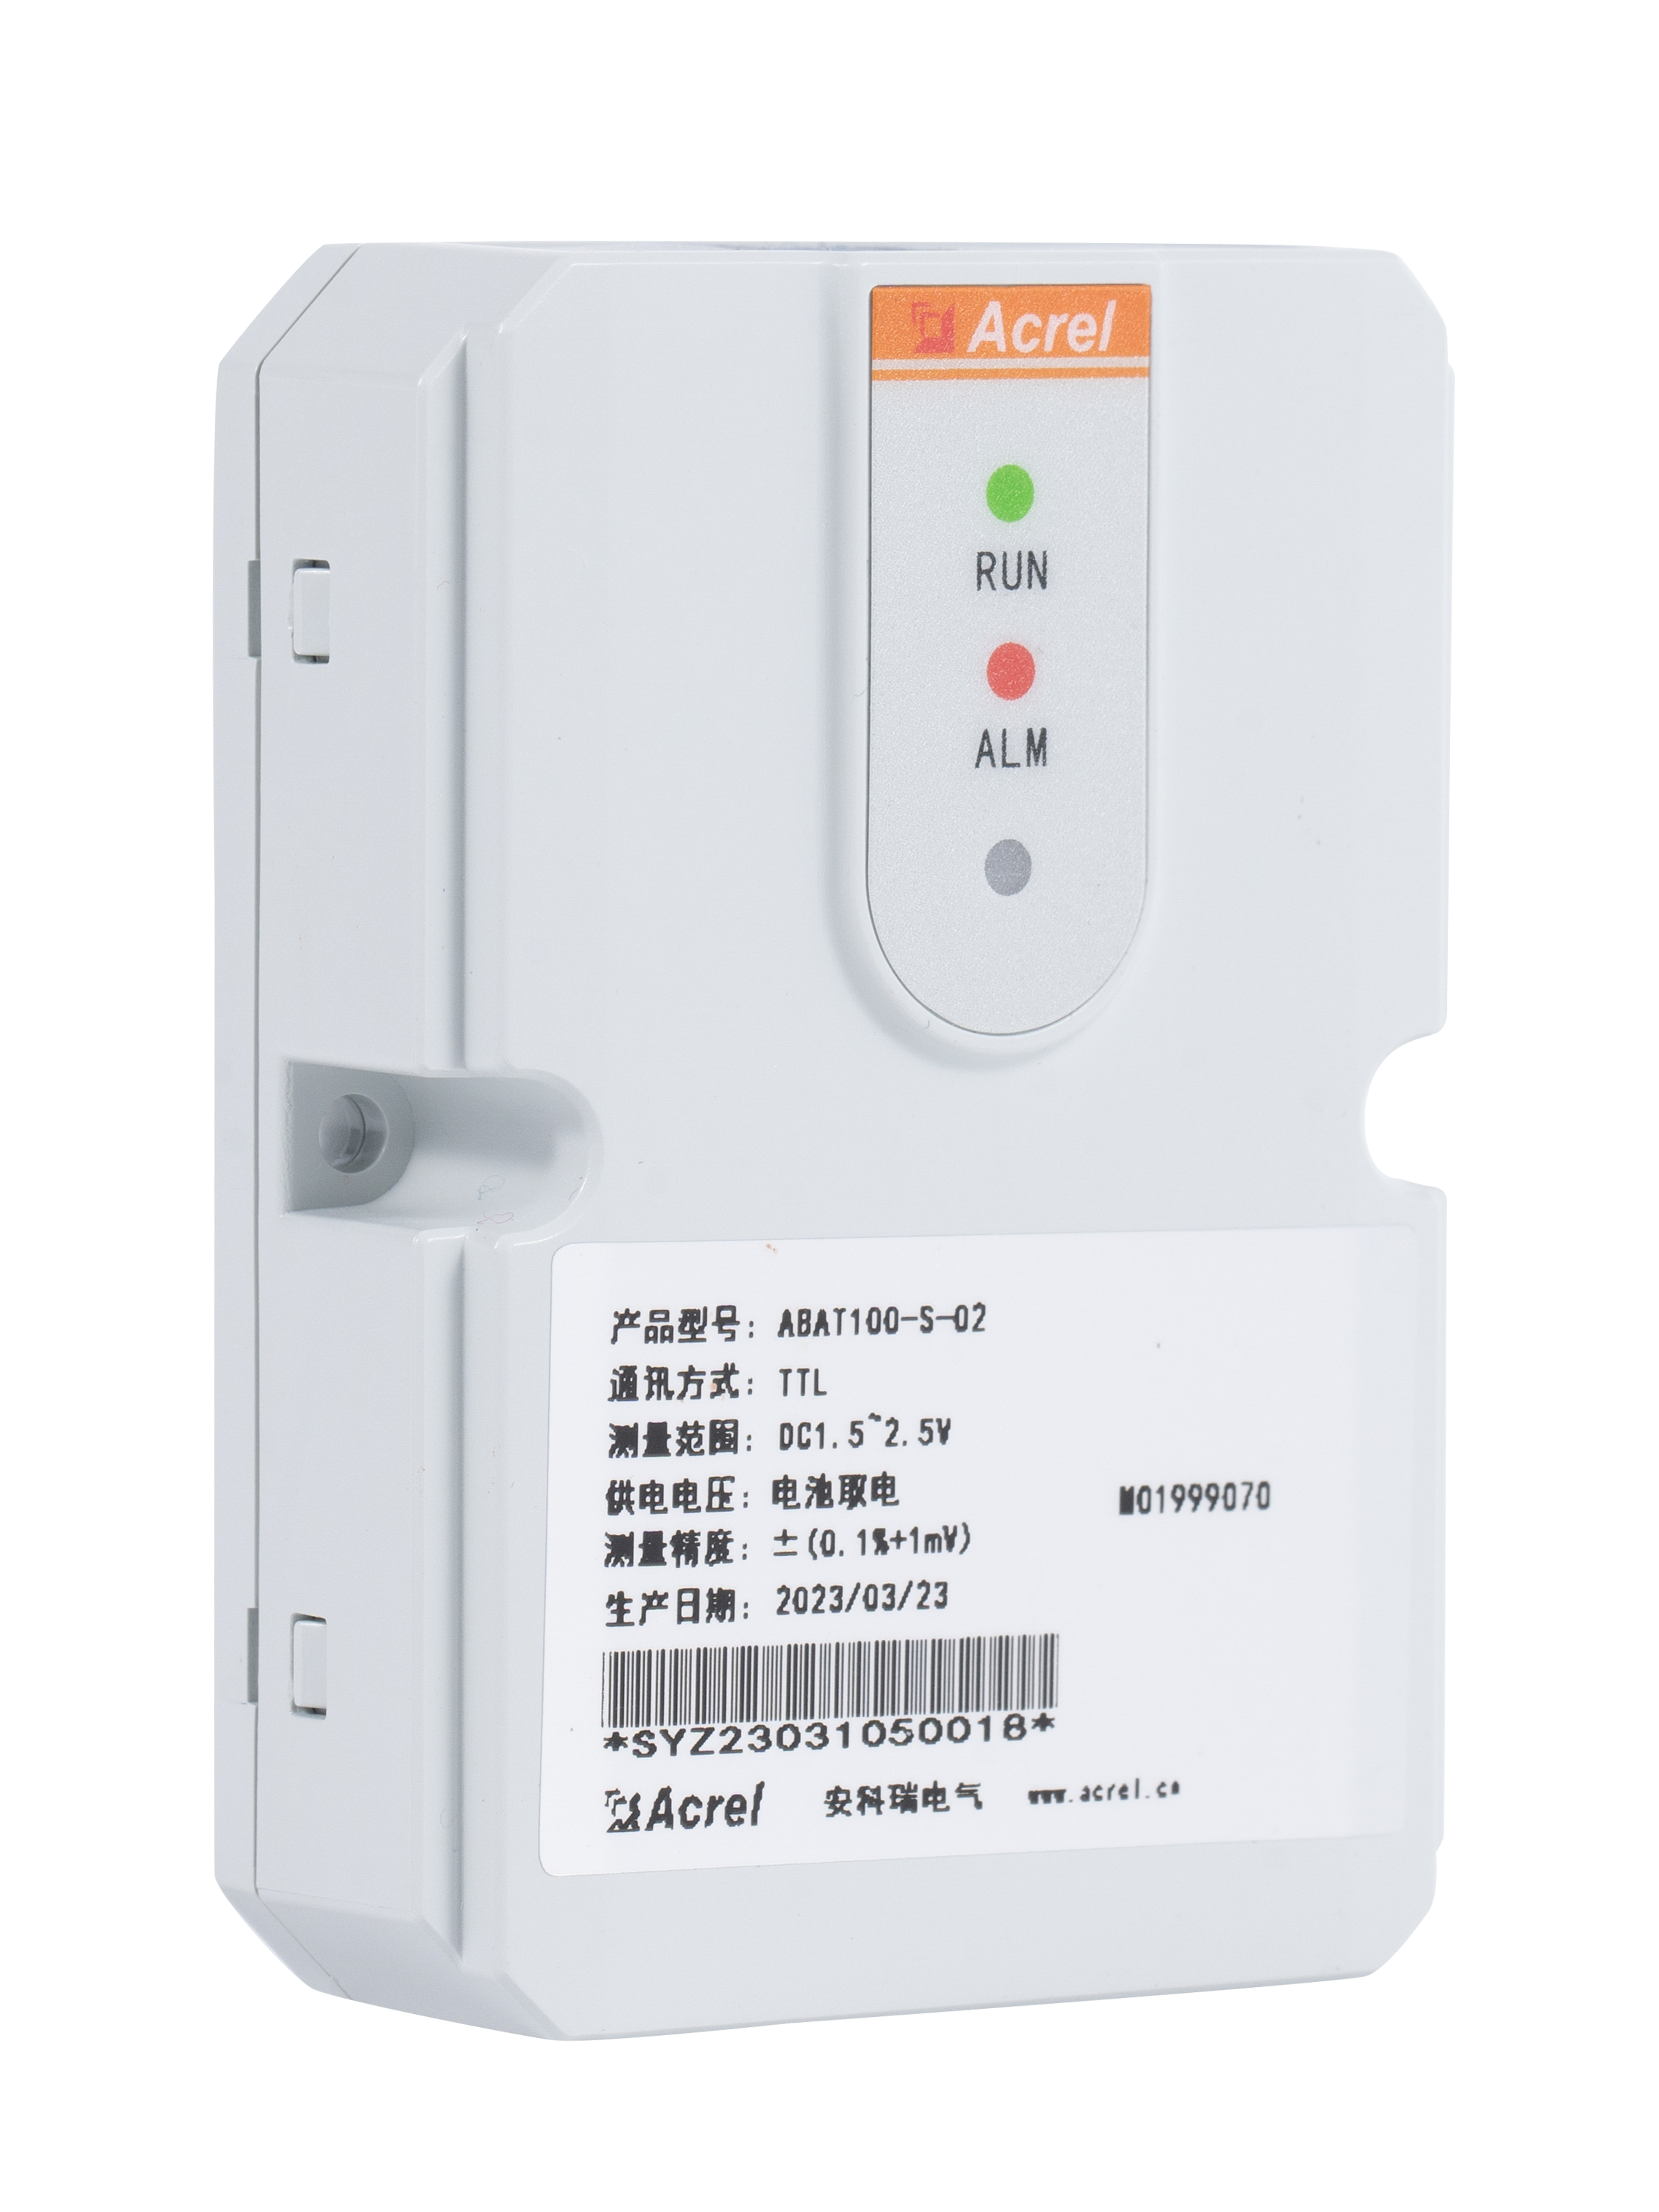 安科瑞ABAT系列蓄电池在线监测系统 集中管理 电池数据 可报警